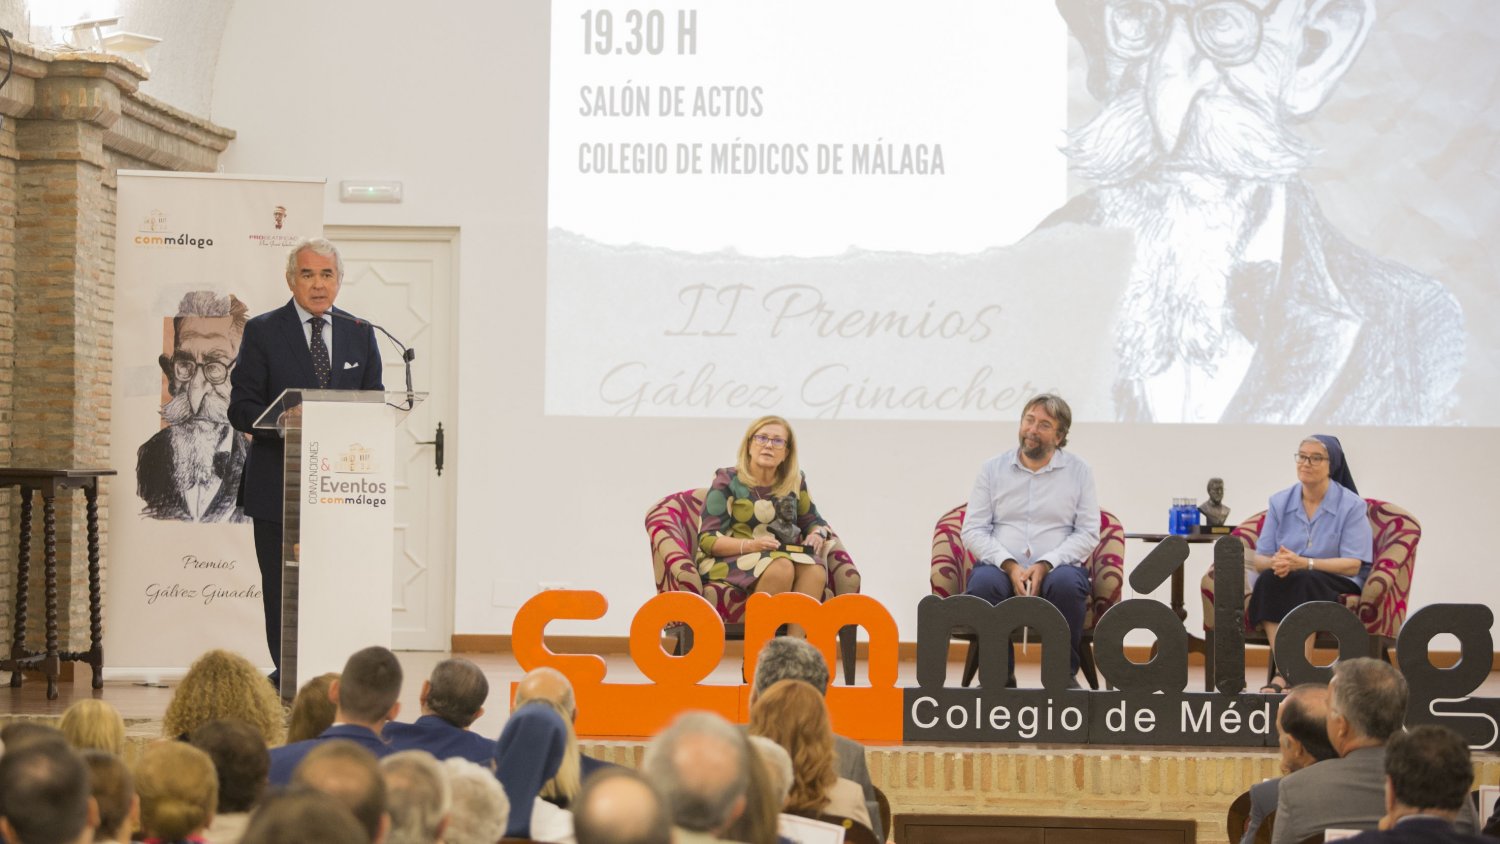 Los II Premios Gálvez Ginachero ponen en valor a las personas e instituciones solidarias